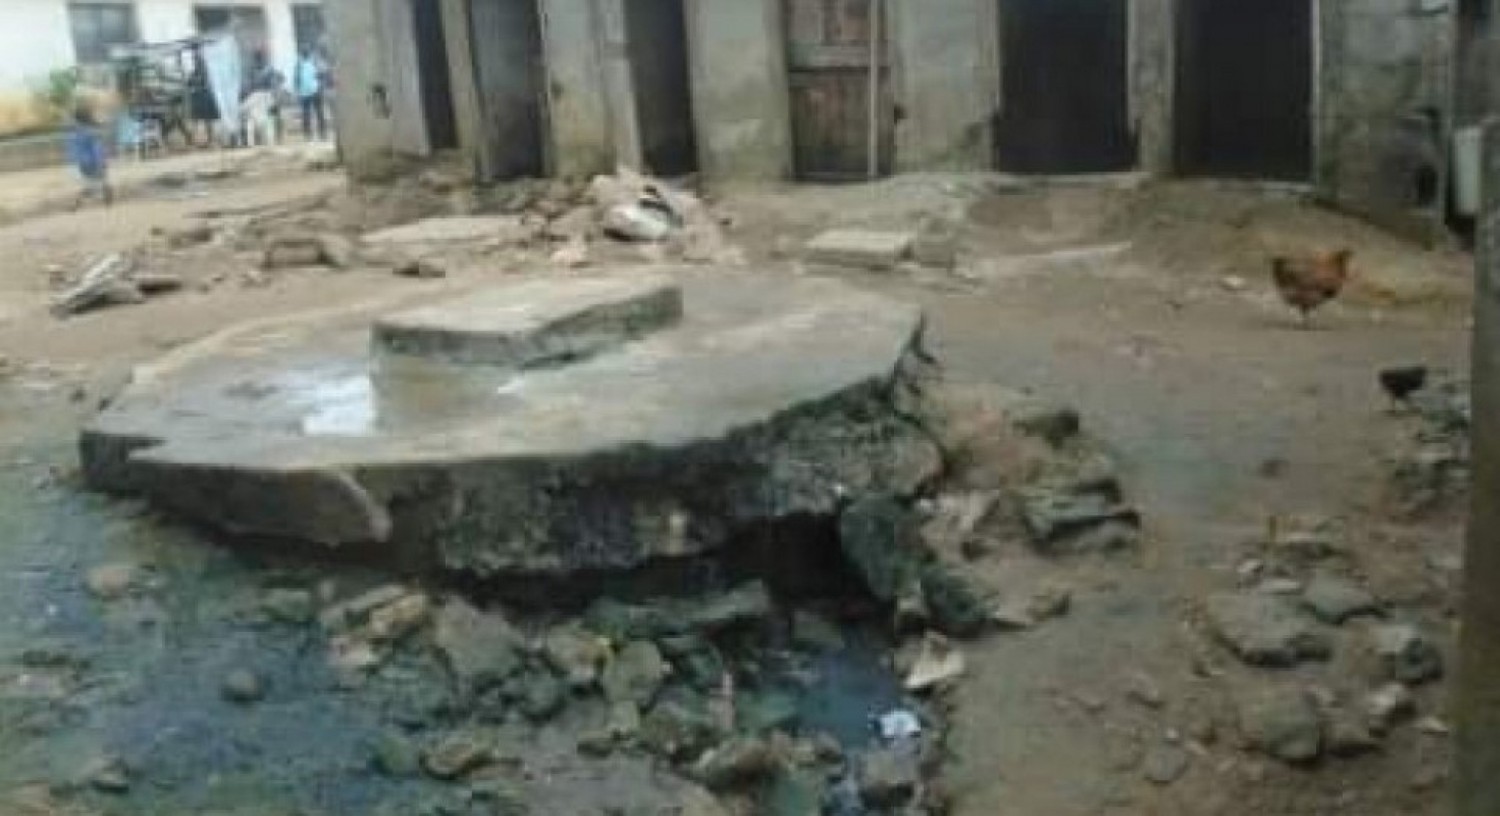 Côte d'Ivoire : Daloa, pris d'une envie pressée de se soulager, un jeune de 25 ans perd la vie en tombant dans une fosse septique